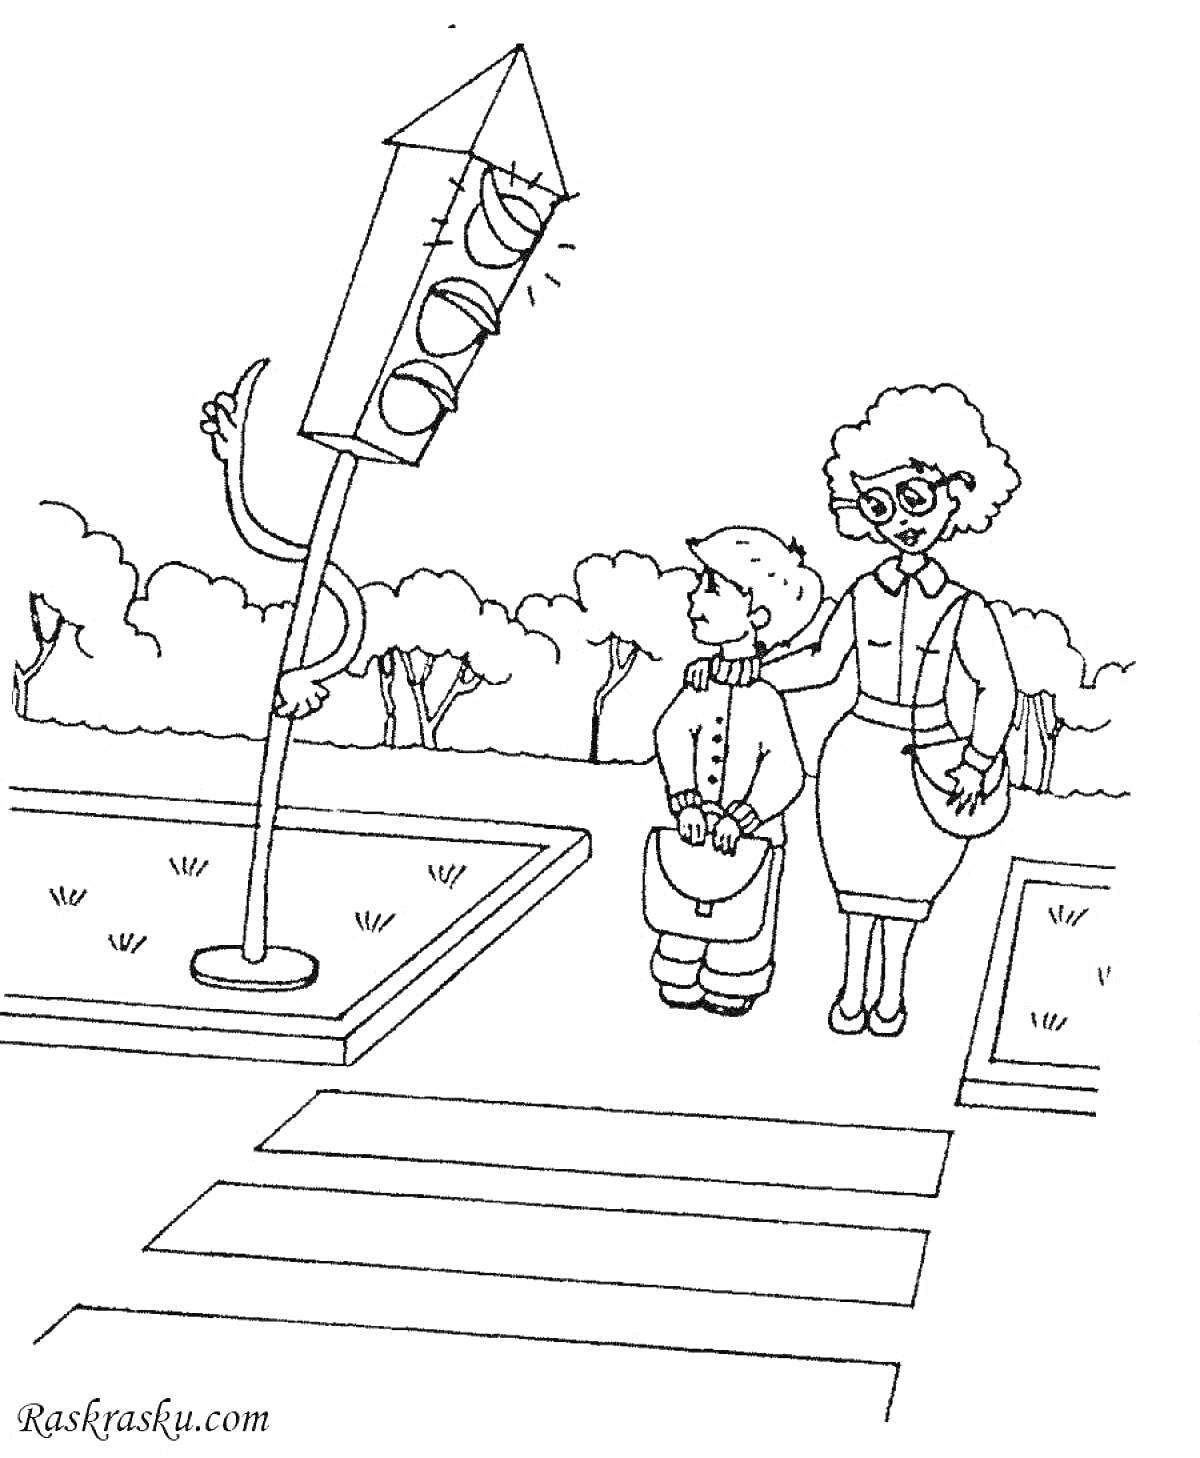 Раскраска Пожилая женщина и мальчик на пешеходном переходе с жезлом светофора с ручками и ножками.